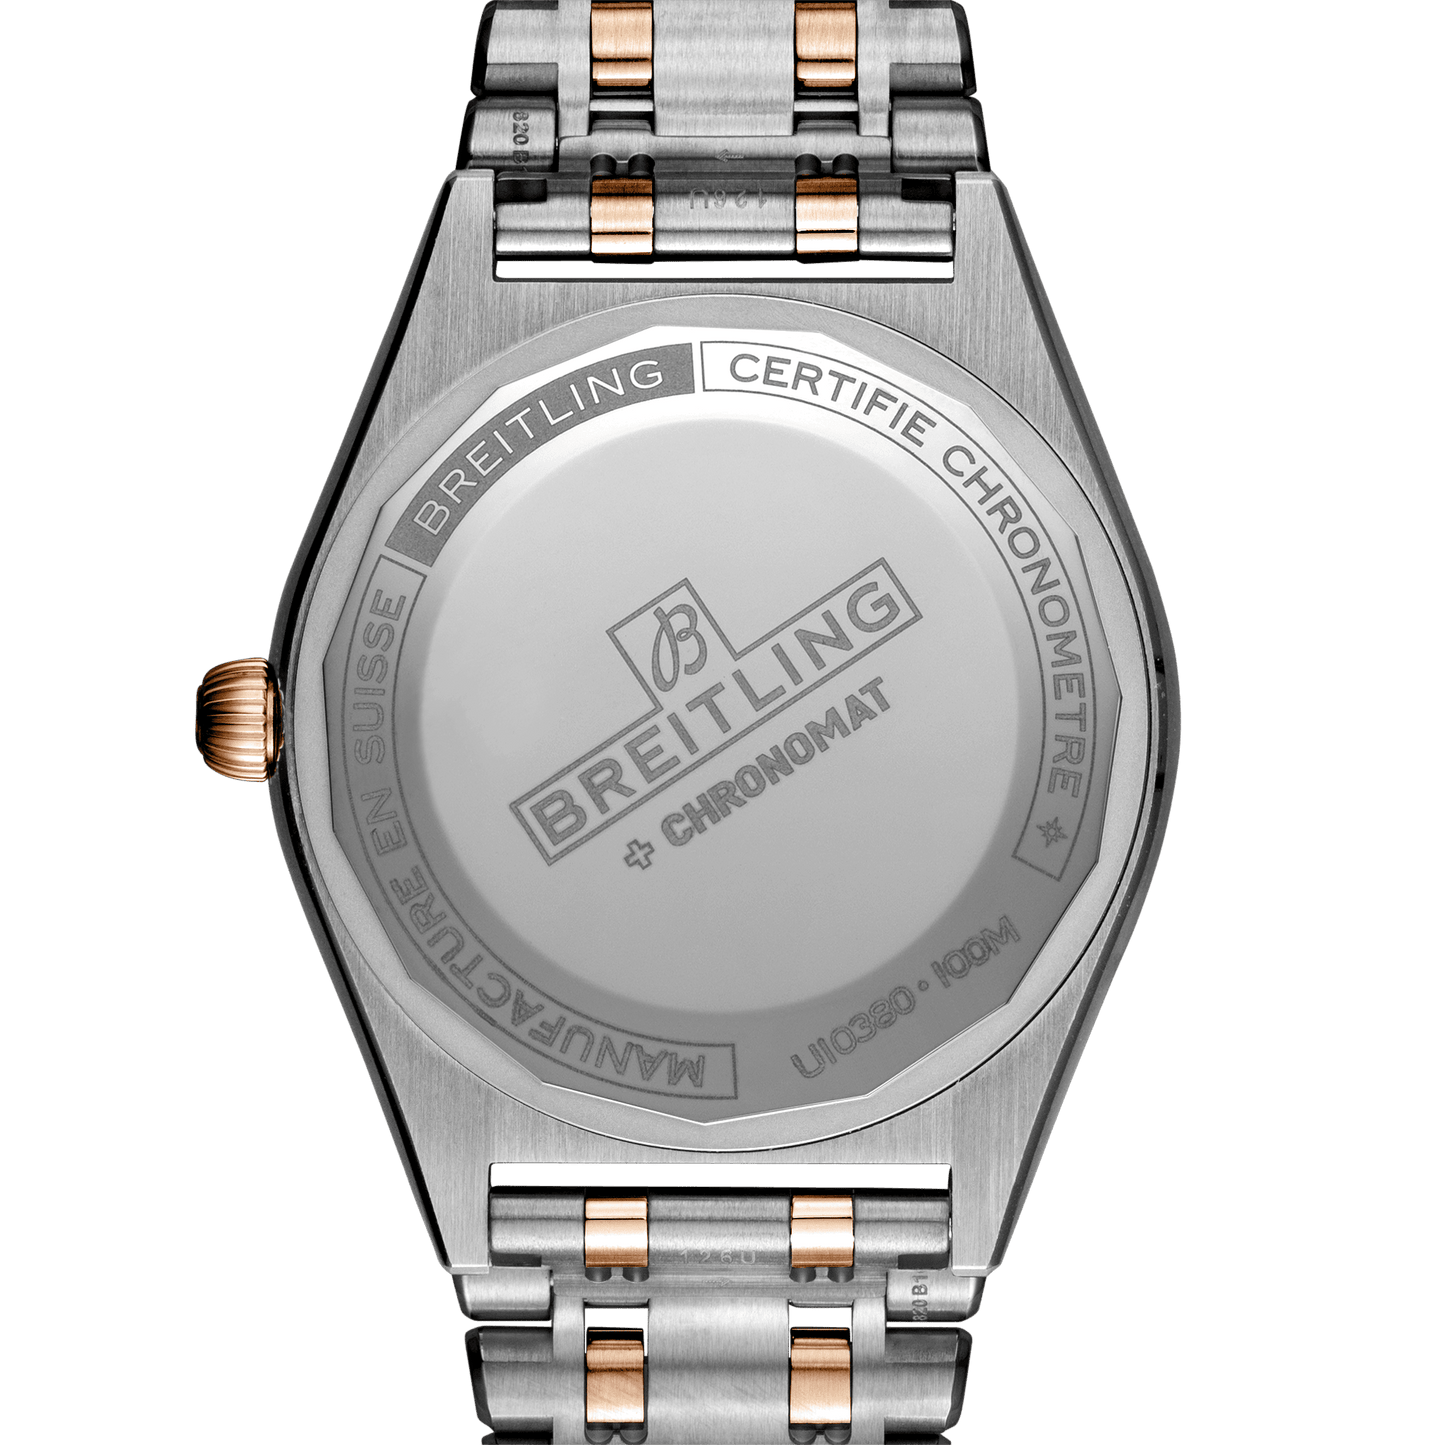 Breitling Chronomat 36